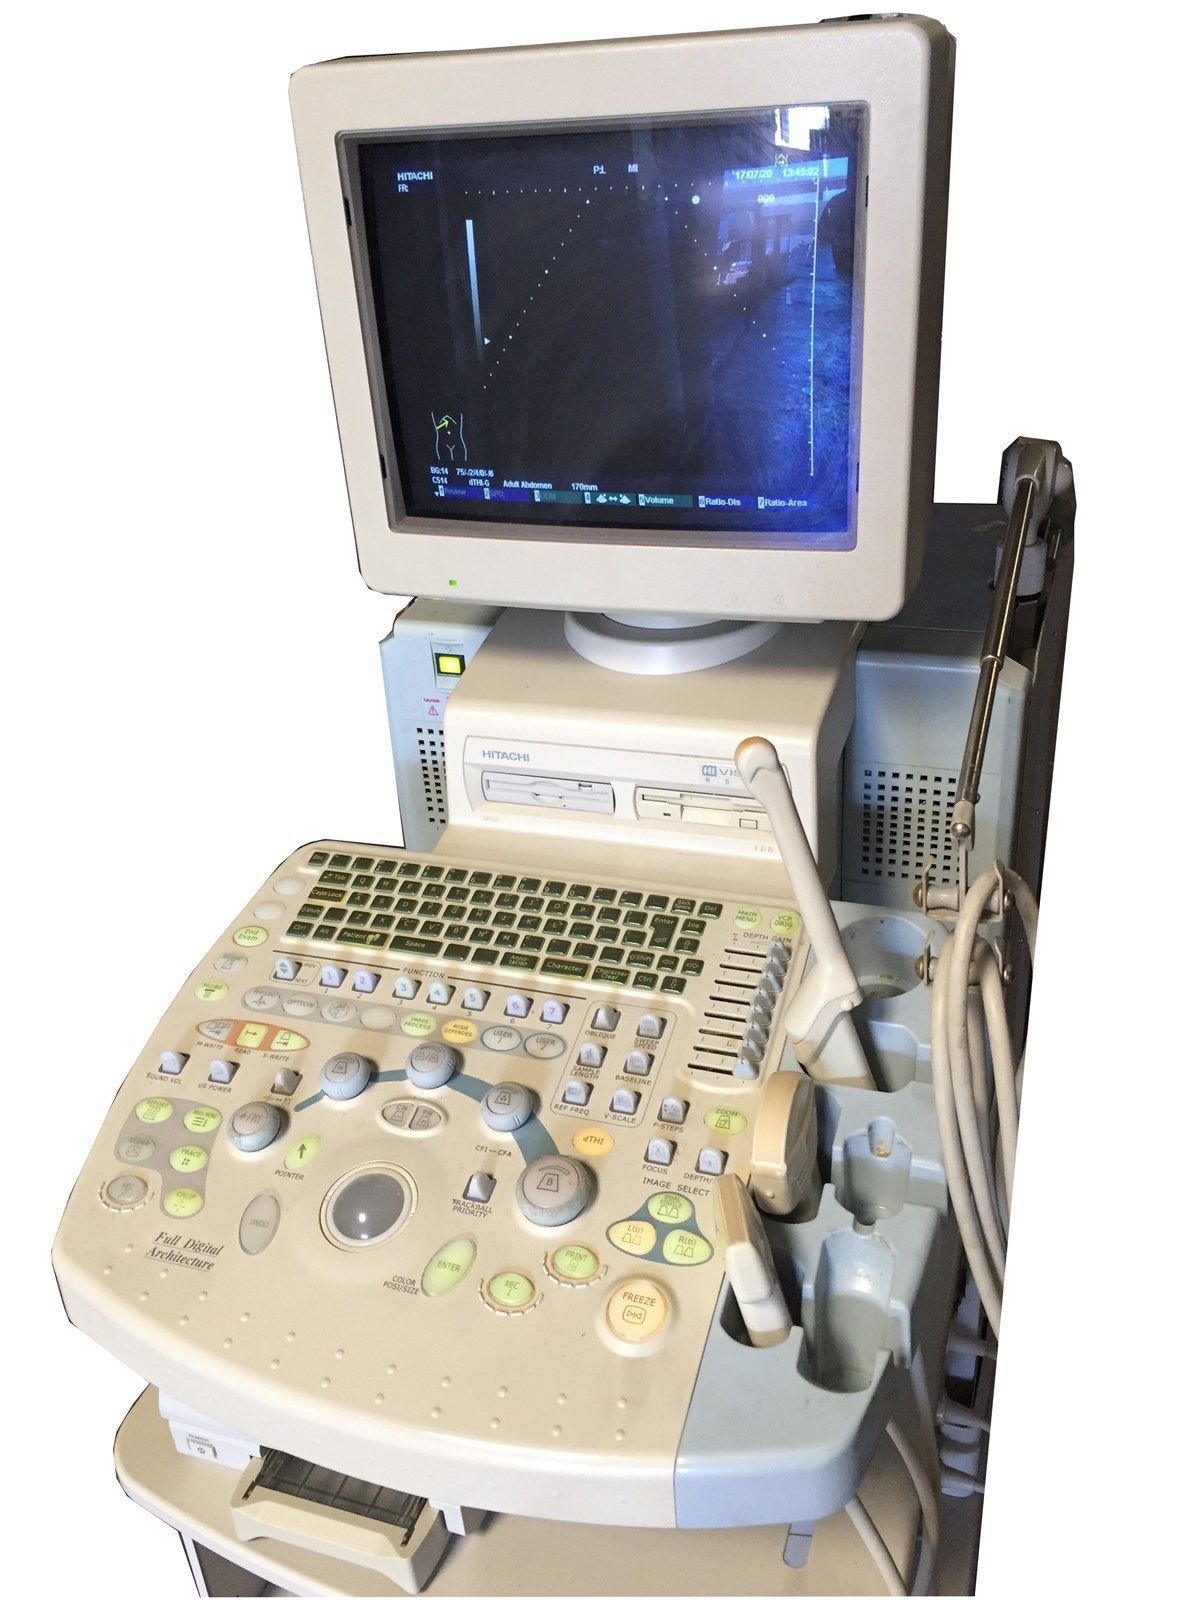 Hitachi Medical EUB-8500 EZU-MT24-S1 Hi Vision Digital Ultrasound Scanner+Probes DIAGNOSTIC ULTRASOUND MACHINES FOR SALE